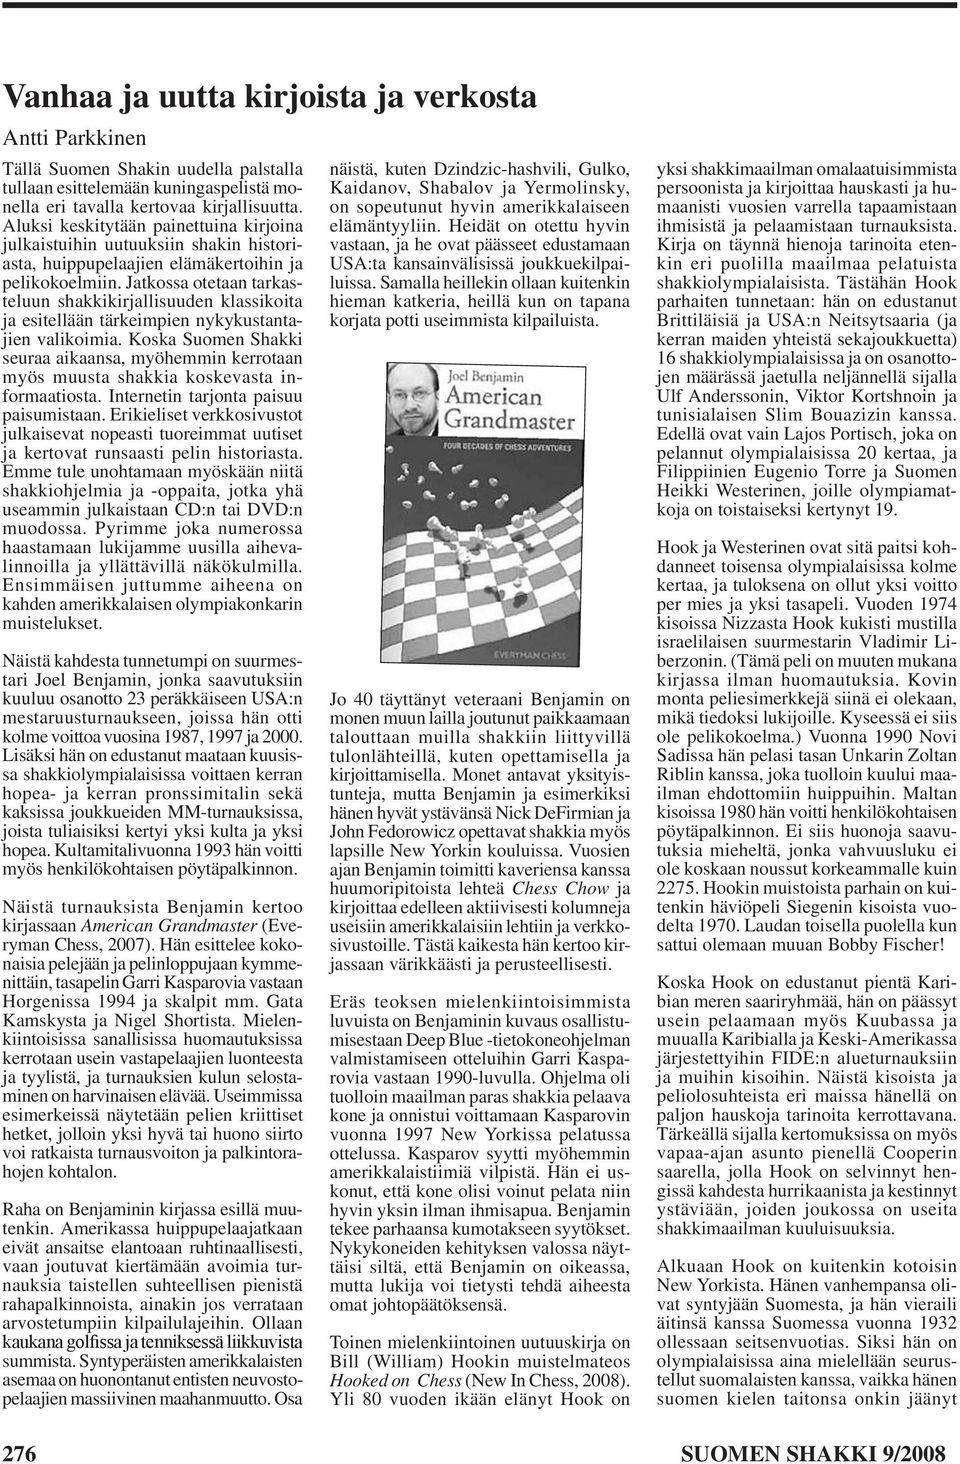 Jatkossa otetaan tarkasteluun shakkikirjallisuuden klassikoita ja esitellään tärkeimpien nykykustantajien valikoimia.